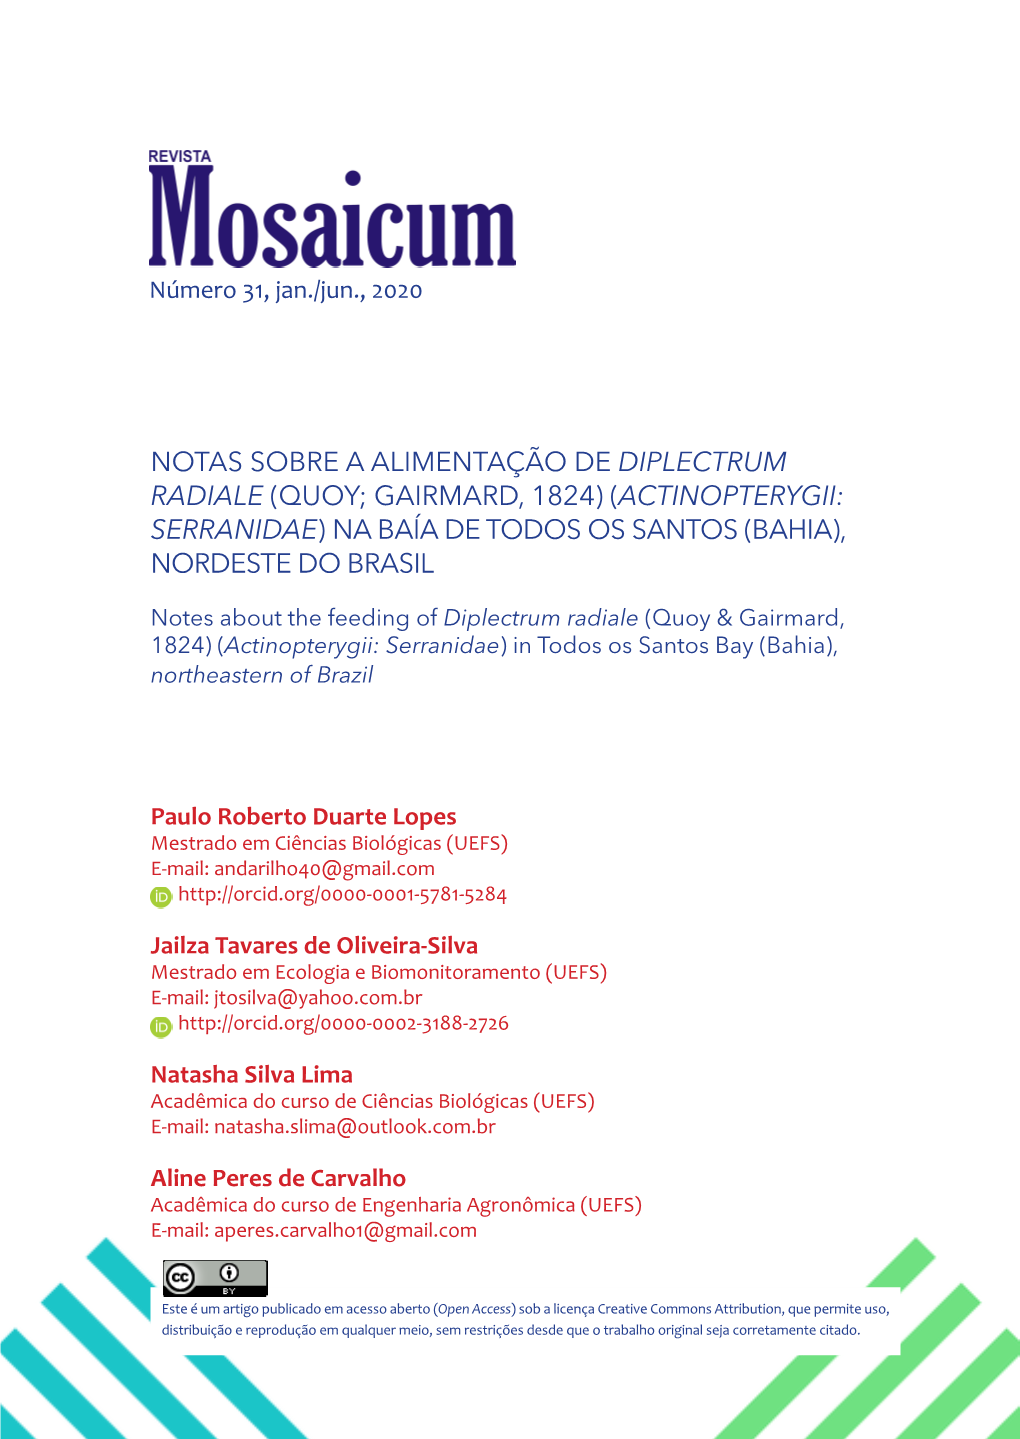 Notas Sobre a Alimentação De Diplectrum Radiale (Quoy; Gairmard, 1824) (Actinopterygii: Serranidae) Na Baía De Todos Os Santos (Bahia), Nordeste Do Brasil